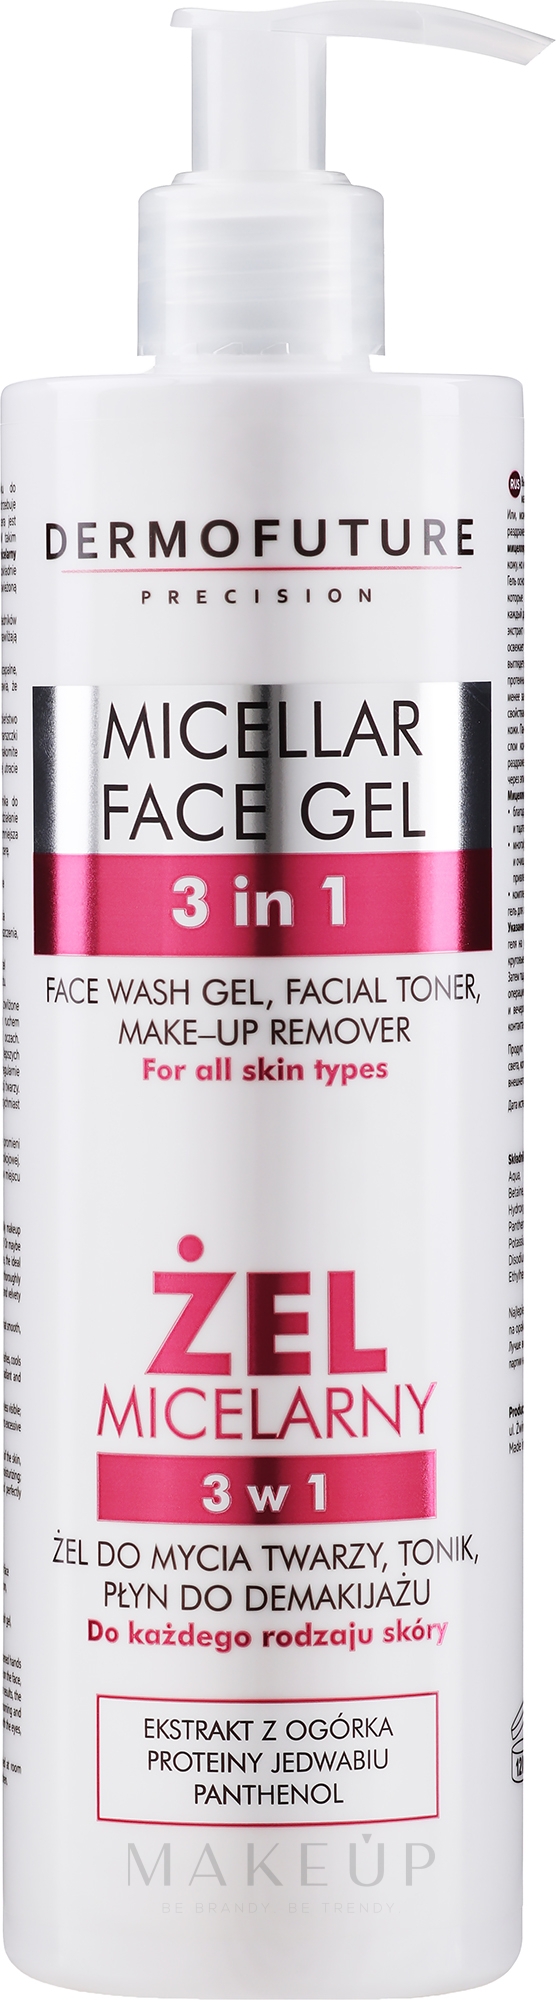 3in1 Mizellen-Gesichtsreinigungsgel mit Gurkenextrakt, Seidenproteinen und Panthenol - DermoFuture Micellar Face Gel — Foto 400 ml